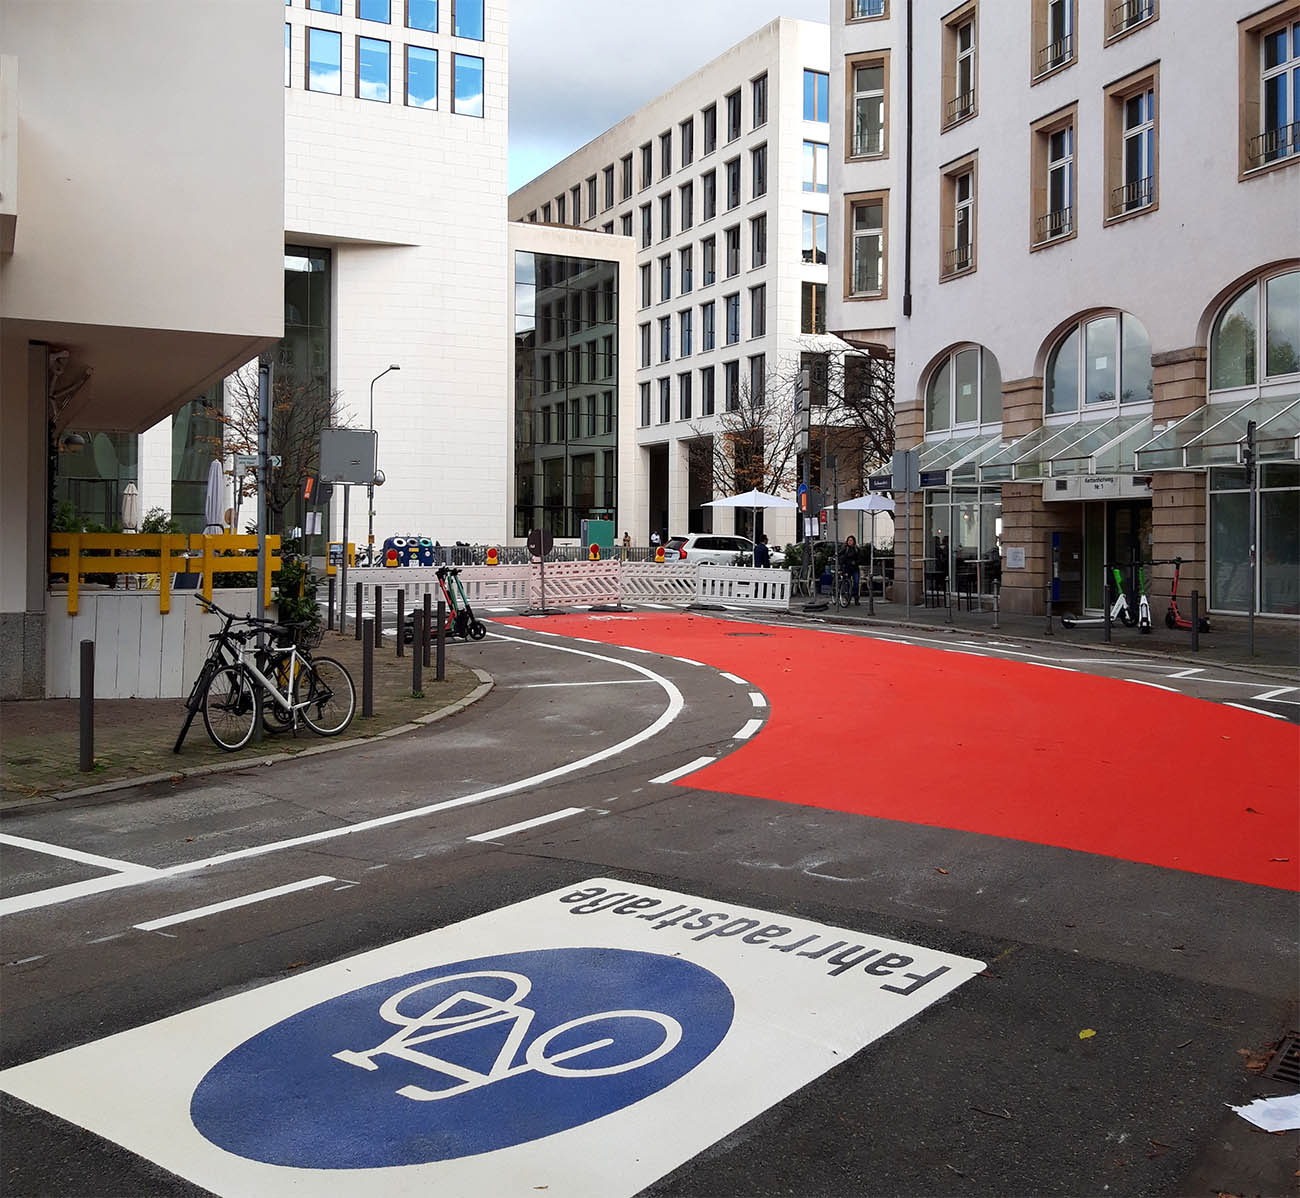 Bilder, die man gerne sieht: eine neue Fahrradstraße entsteht unweit der Bankentürme der City: der Kettenhofweg nimmt neue, fahrradfreundliche Gestalt an
Foto: Bertram Giebeler